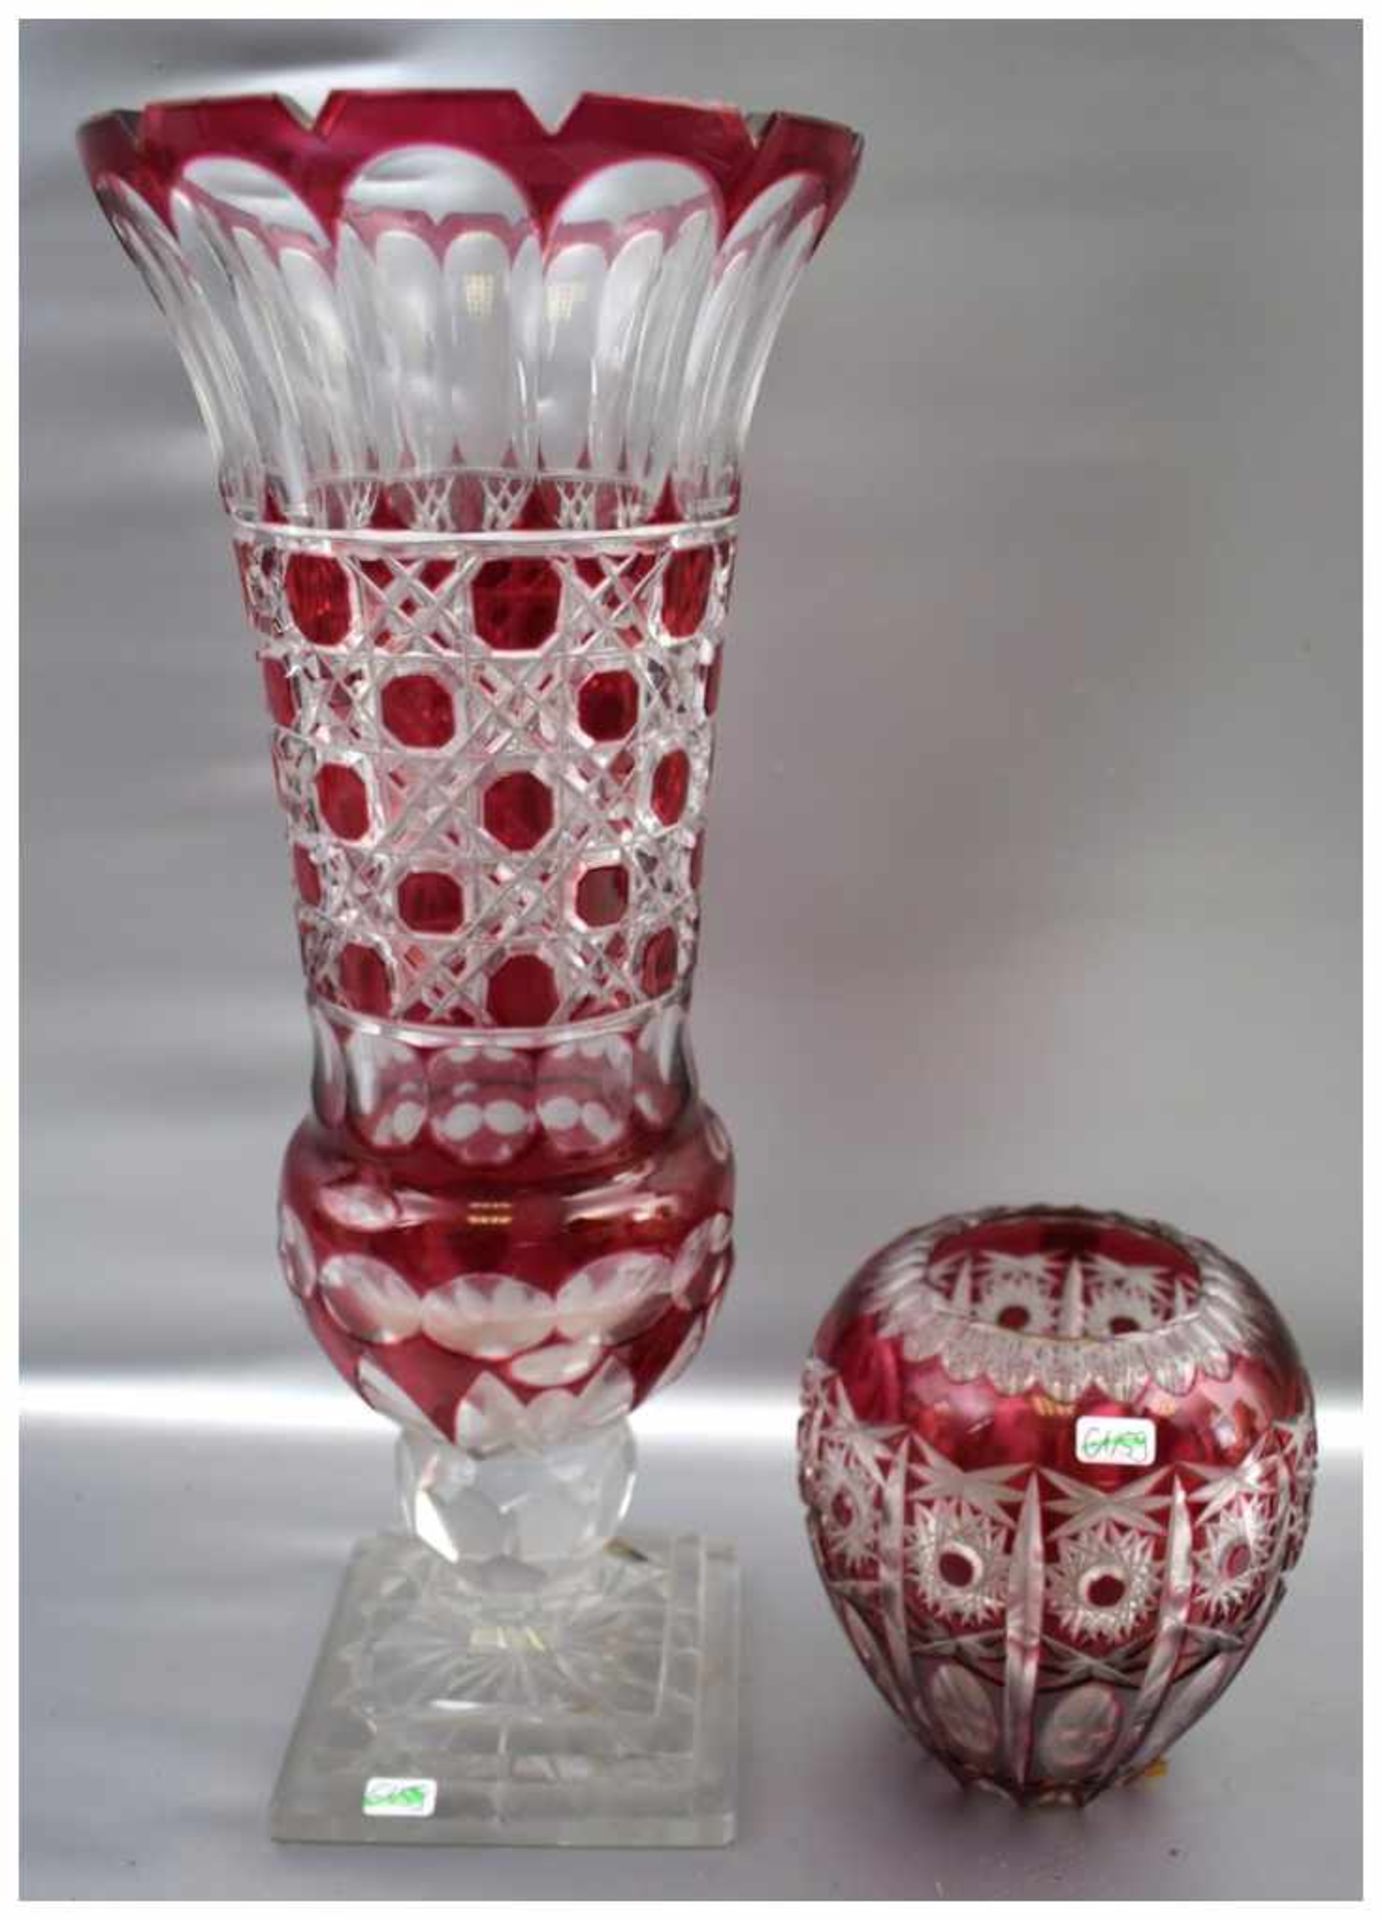 Konvolut zwei Vasen farbl. Kristallglas, geschliffen verziert, mit rotem Überfang, in